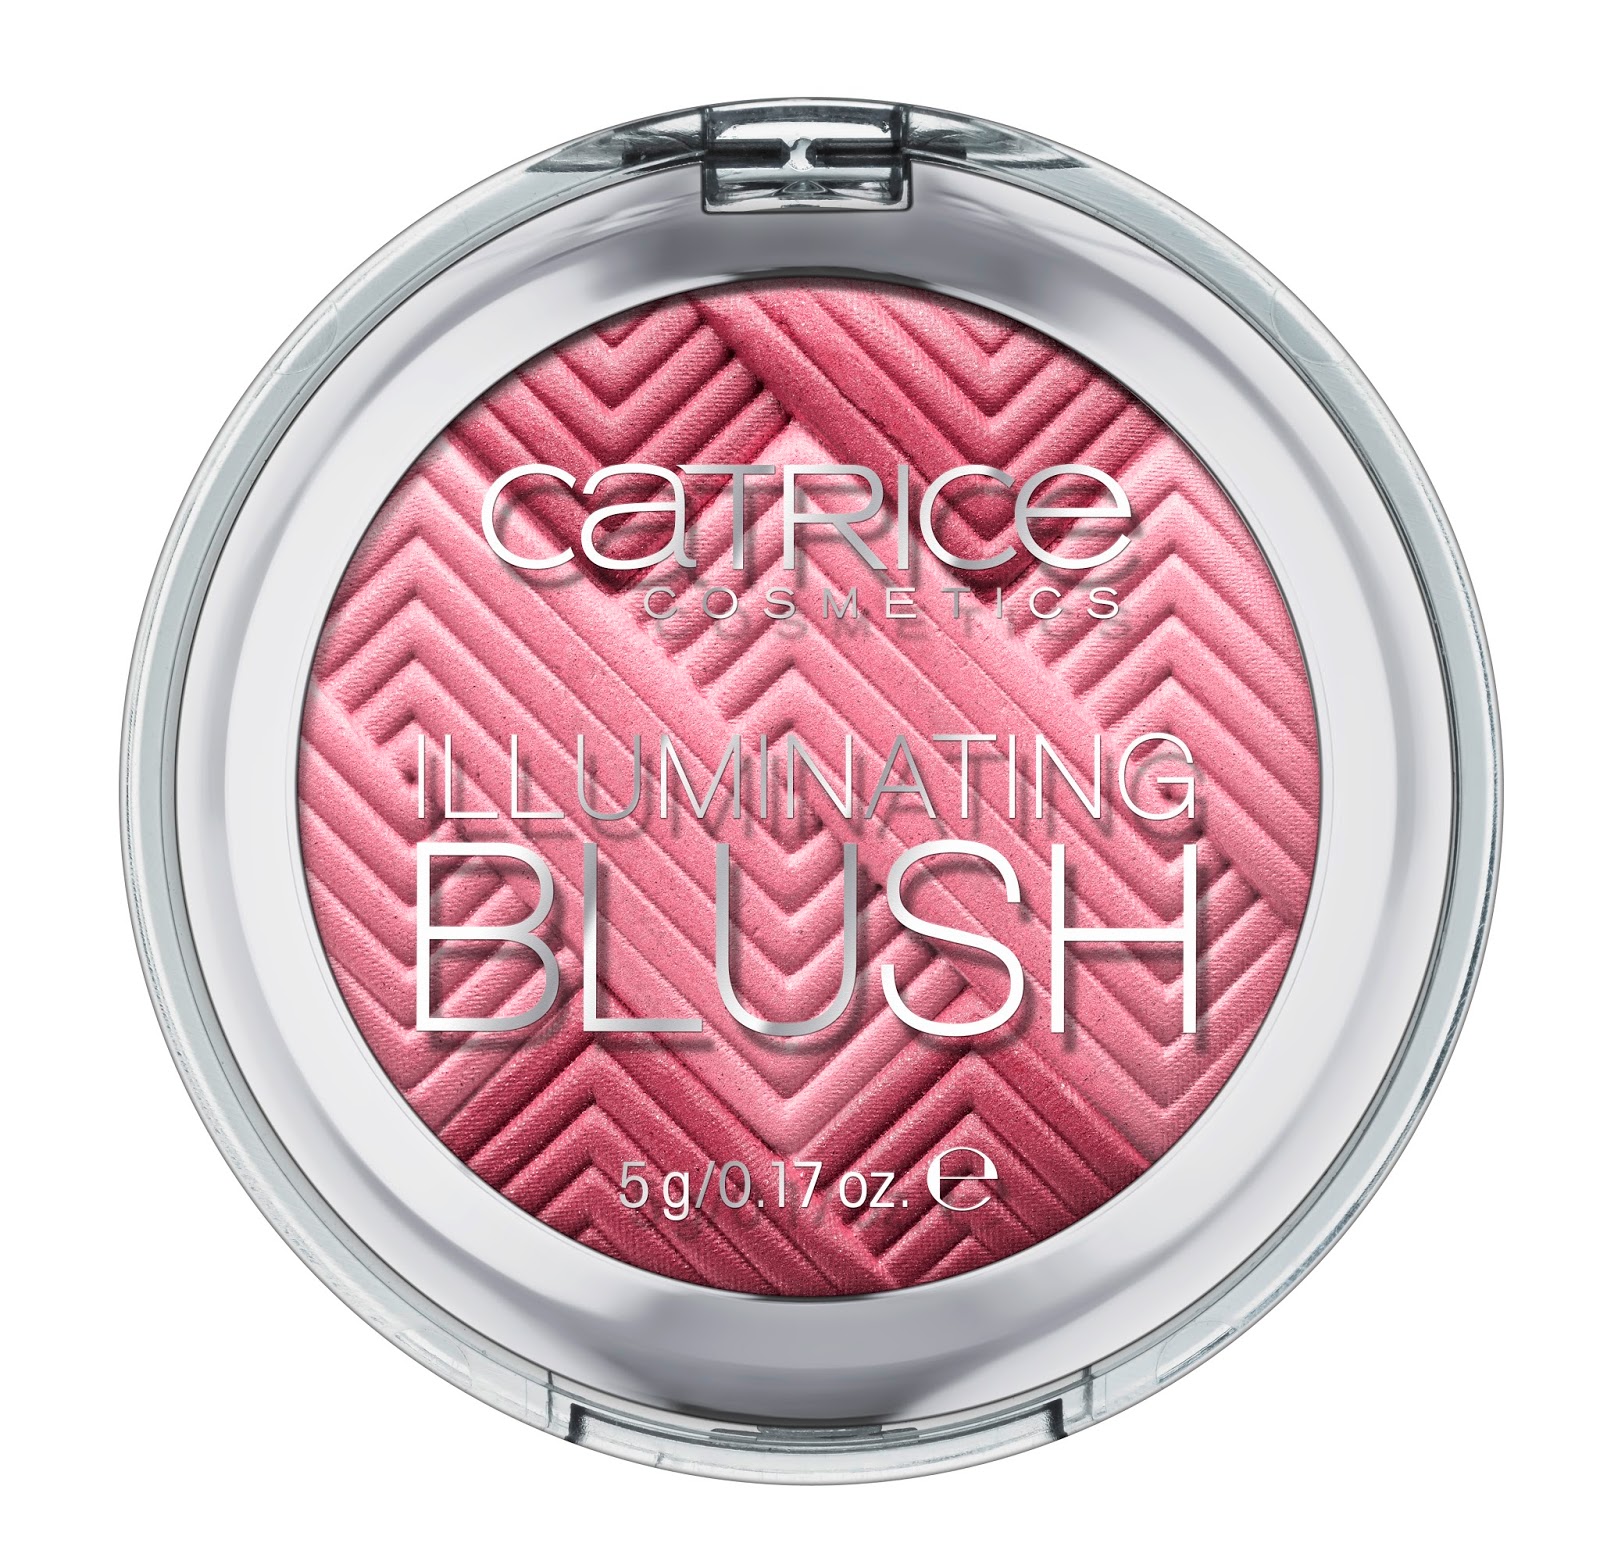 Catrice - Illuminating Blush